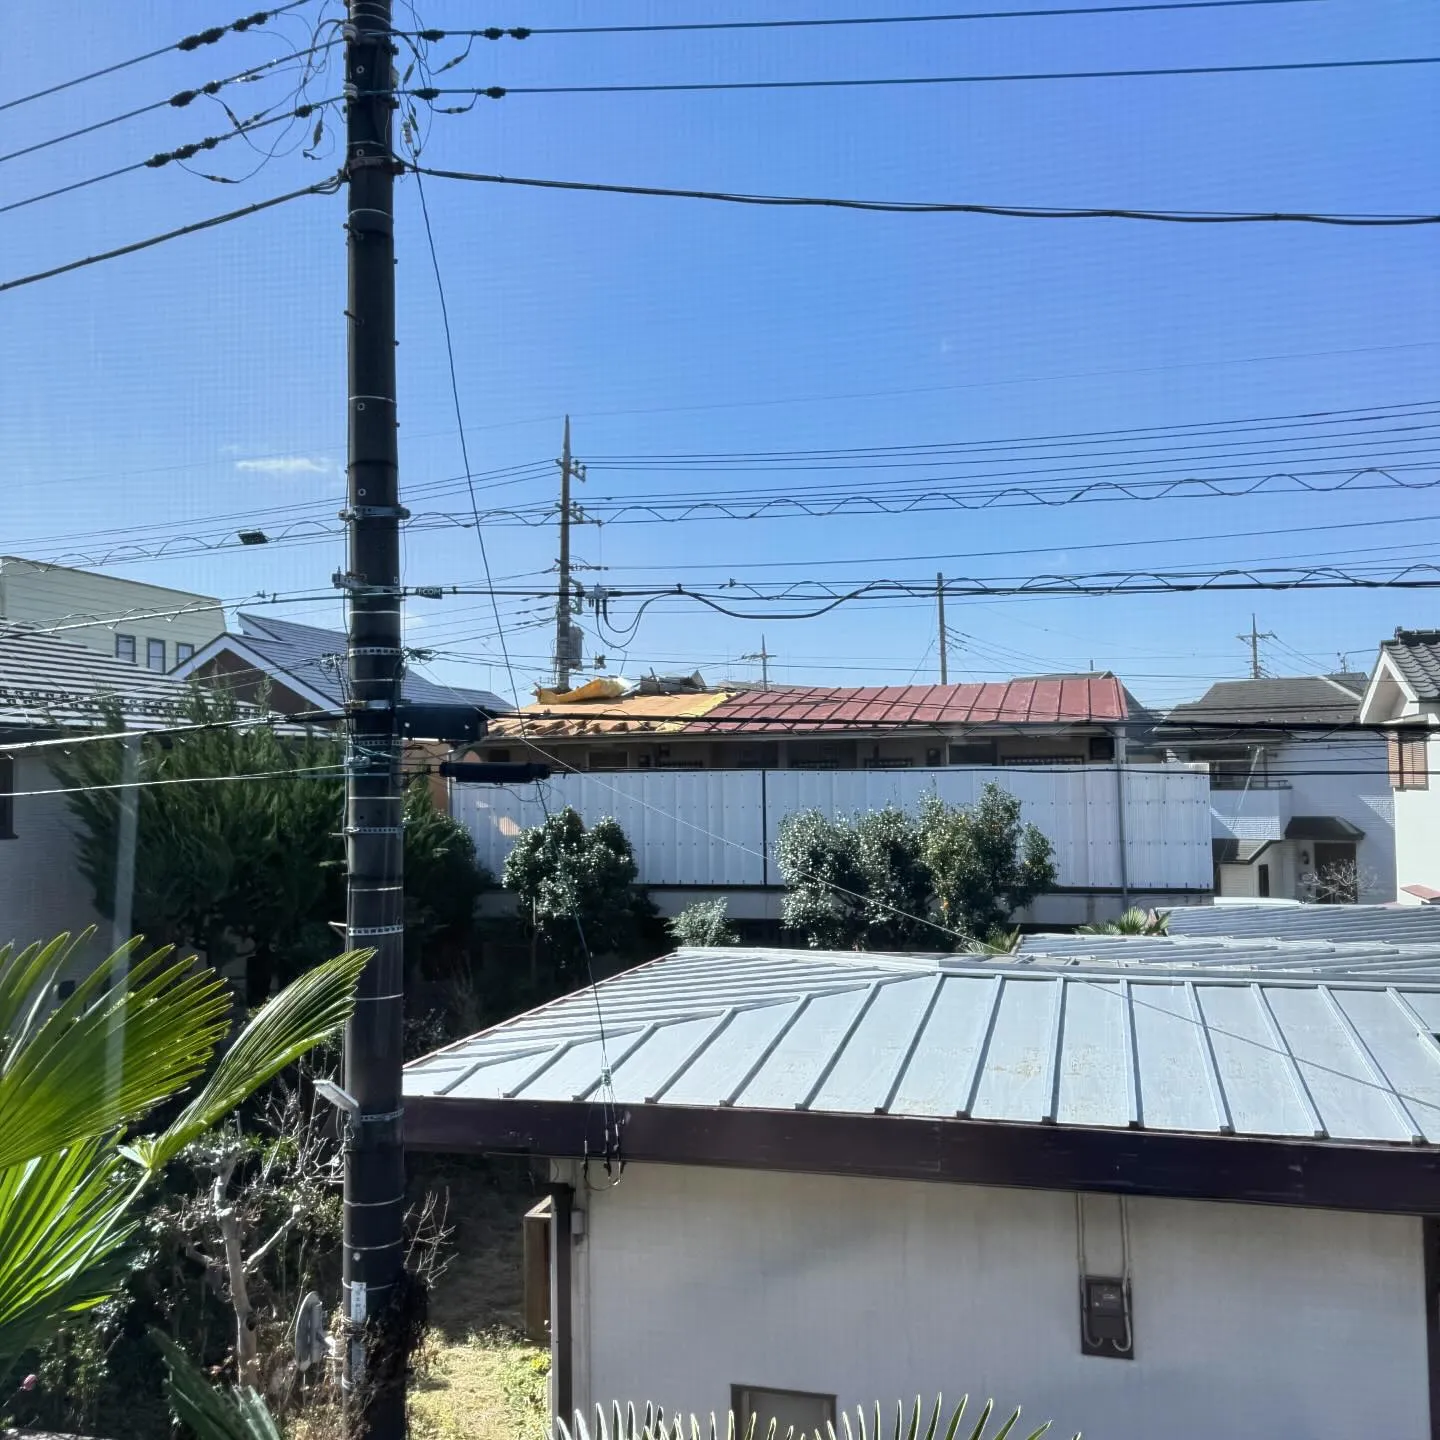 近所のアパートの屋根が台風並みの強風の影響で飛ばされました。